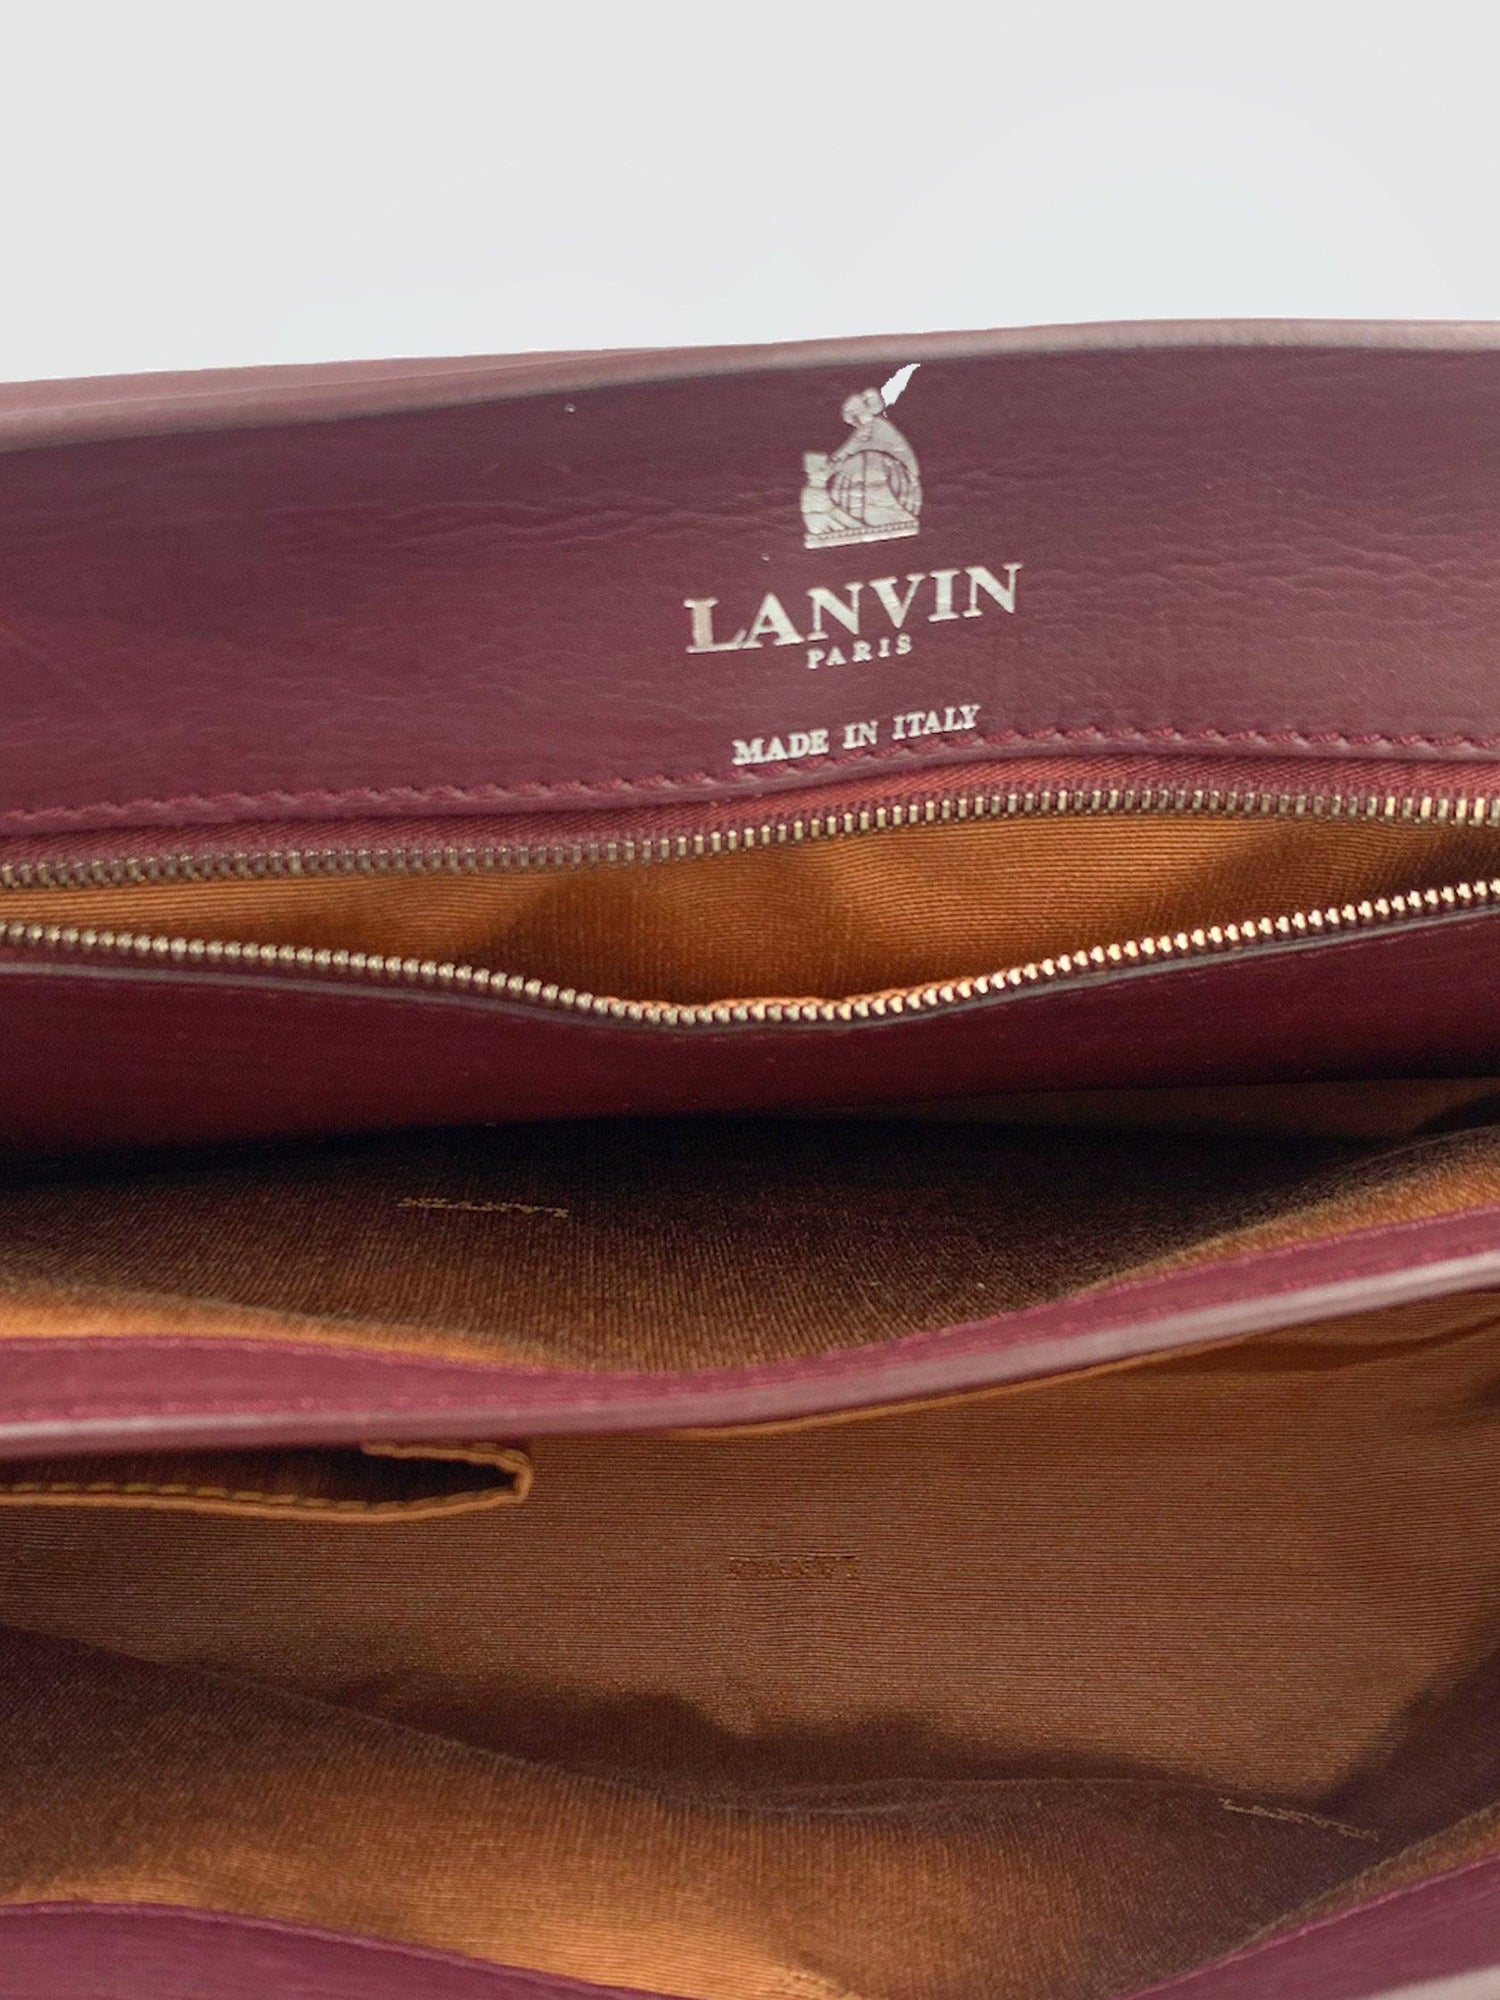 Lanvin - Second Nature Boutique